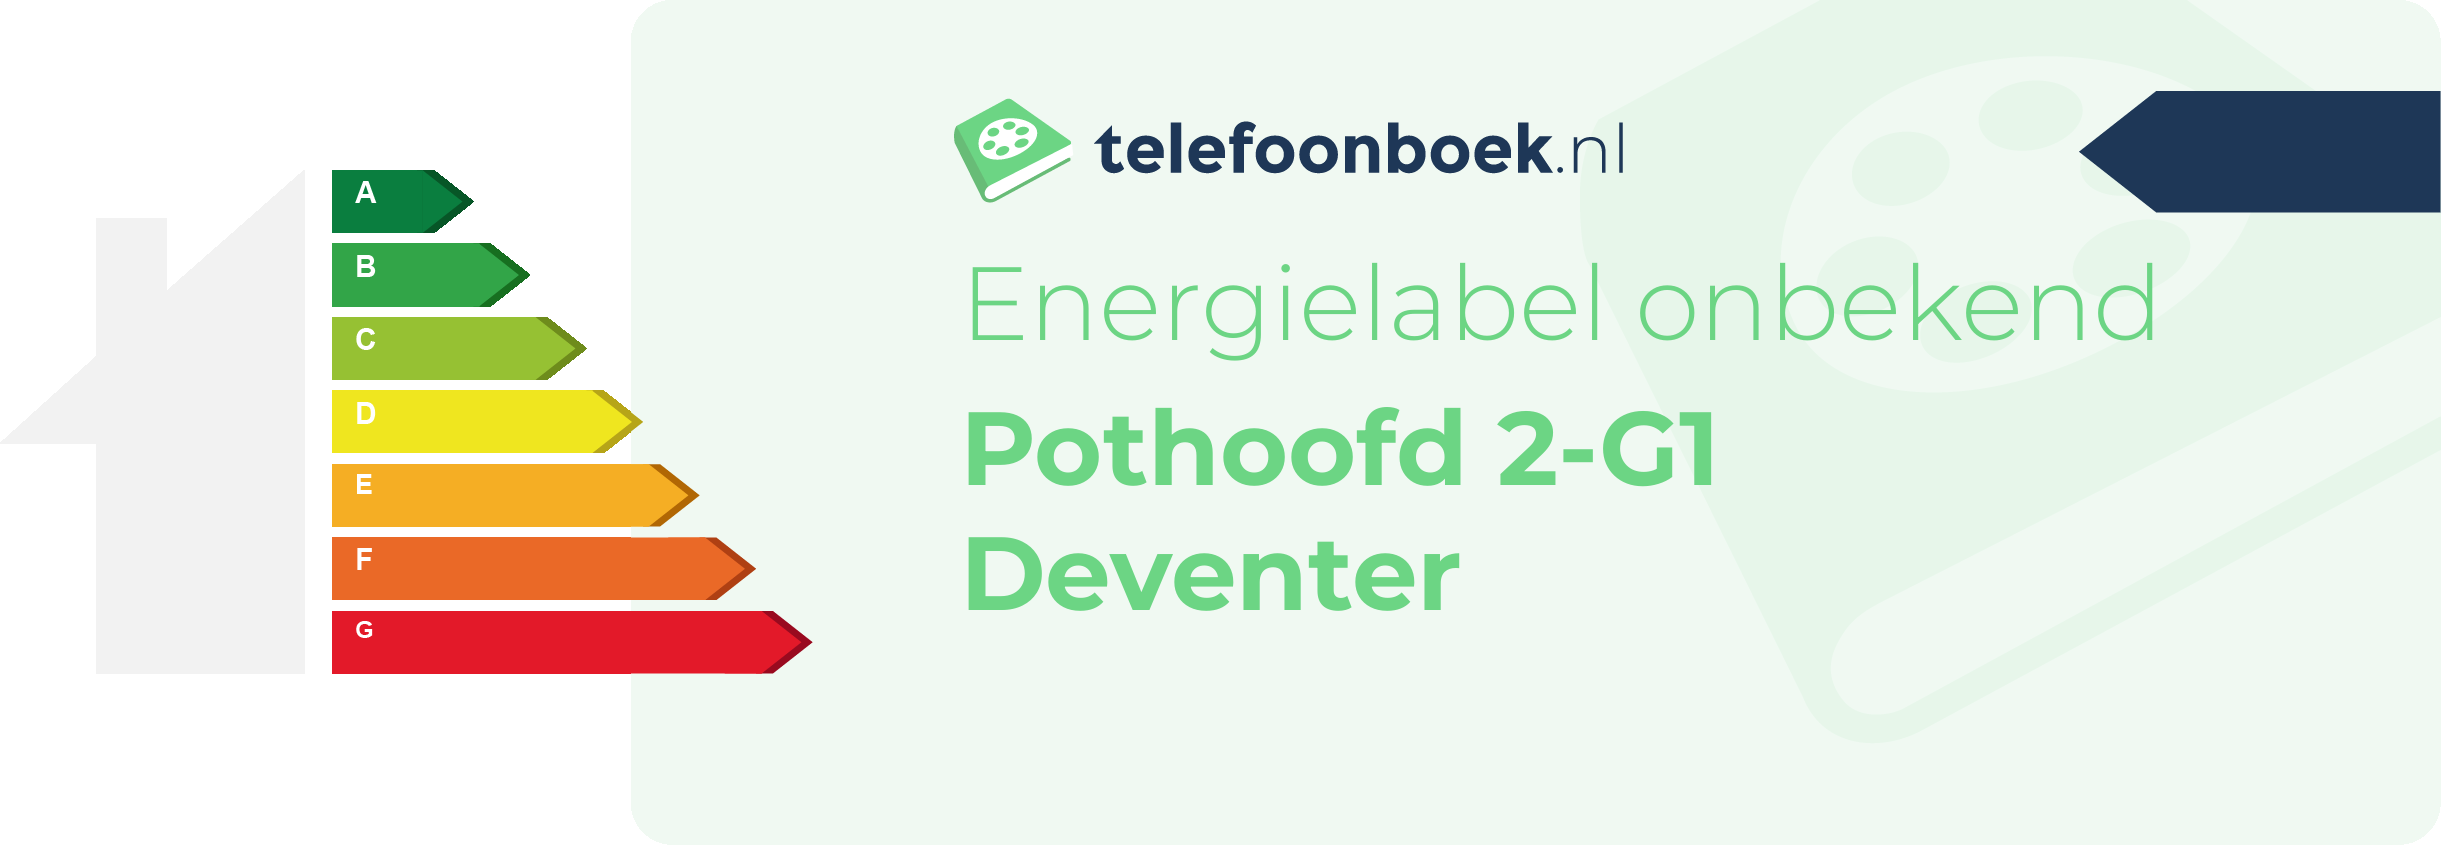 Energielabel Pothoofd 2-G1 Deventer